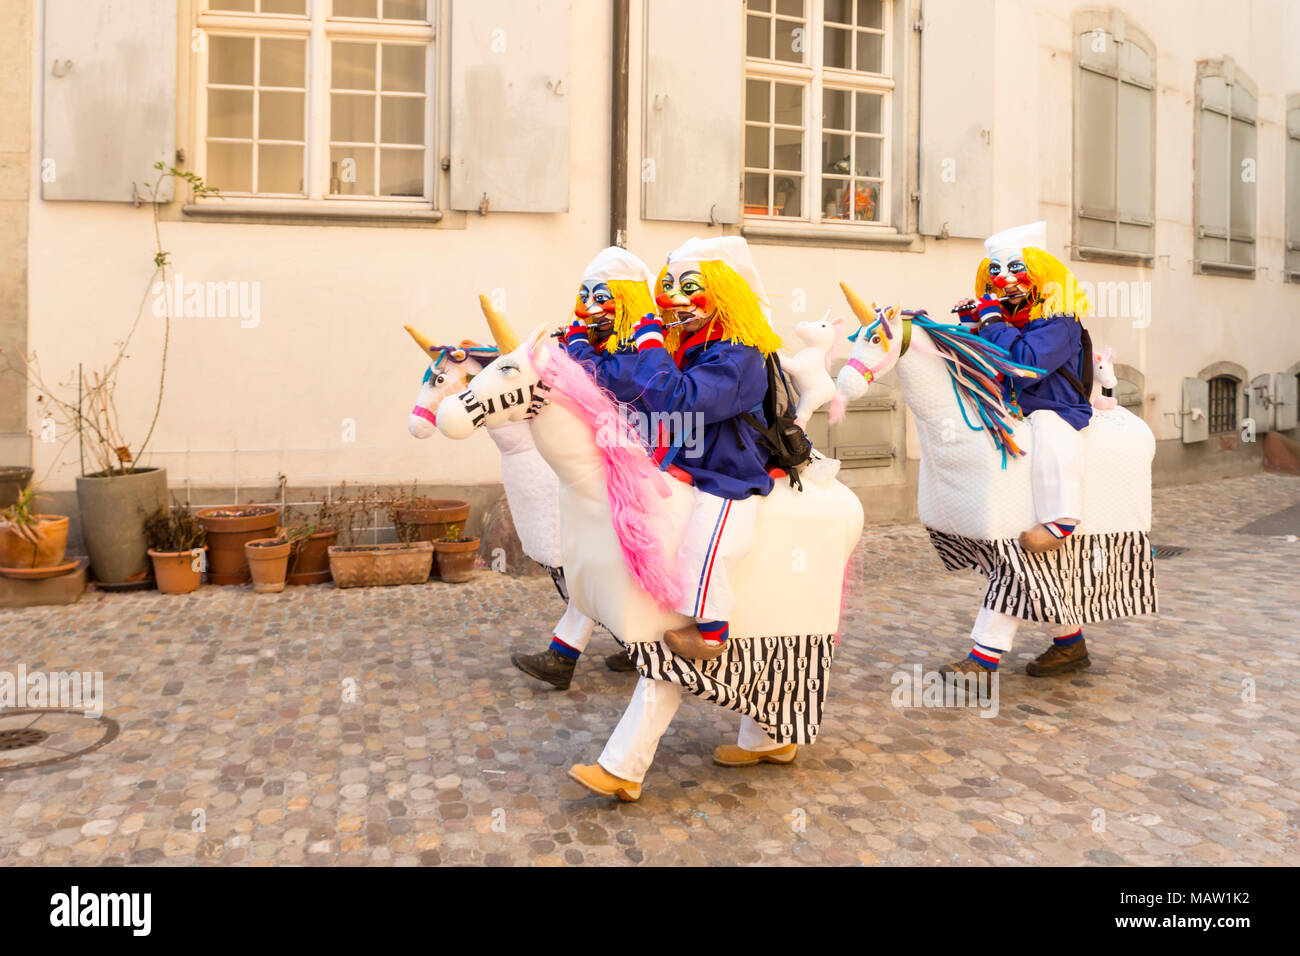 Carnaval de Bâle. Martinsgasse, Bâle, Suisse - 21 février 2018. Trois participants en costumes de chevaux mignon balade dans la vieille ville Banque D'Images